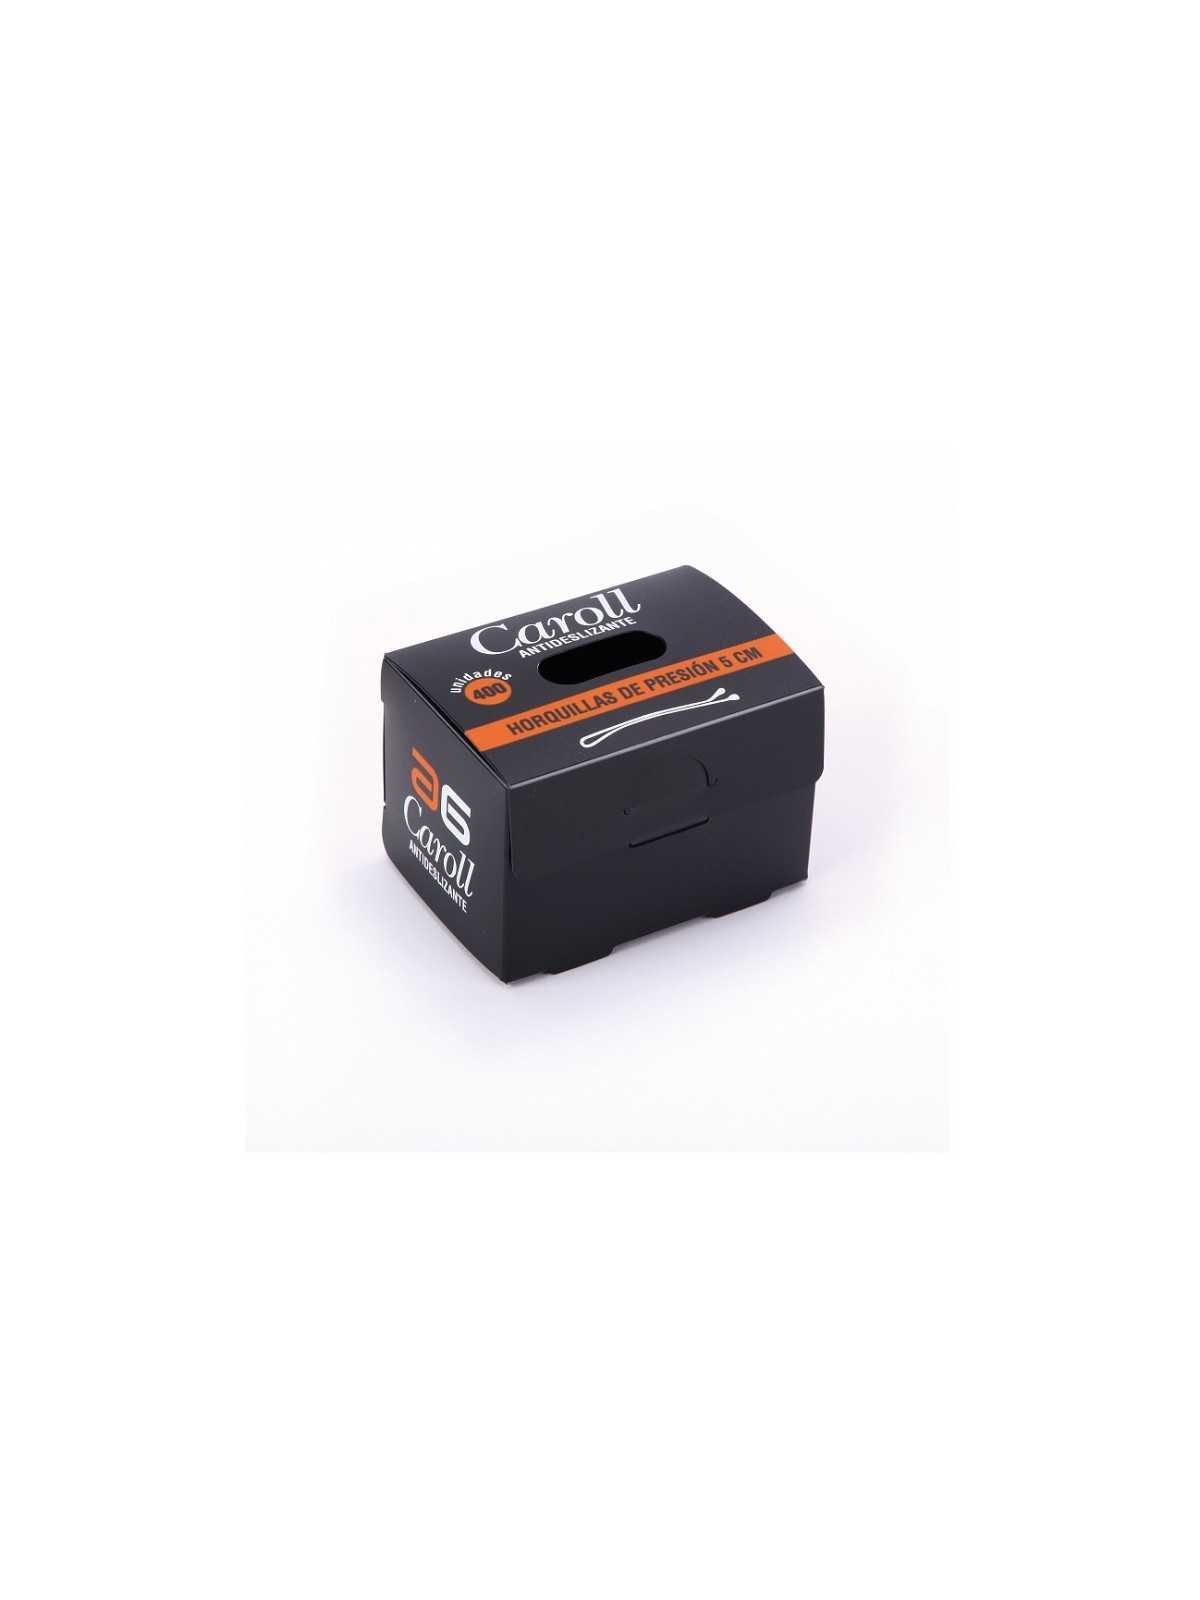 Comprar Horquillas clip Caroll antideslizantes negro 5cm caja 400 unidades en Peluquería por sólo 15,99 € o un precio específico de 13,59 € en Thalie Care